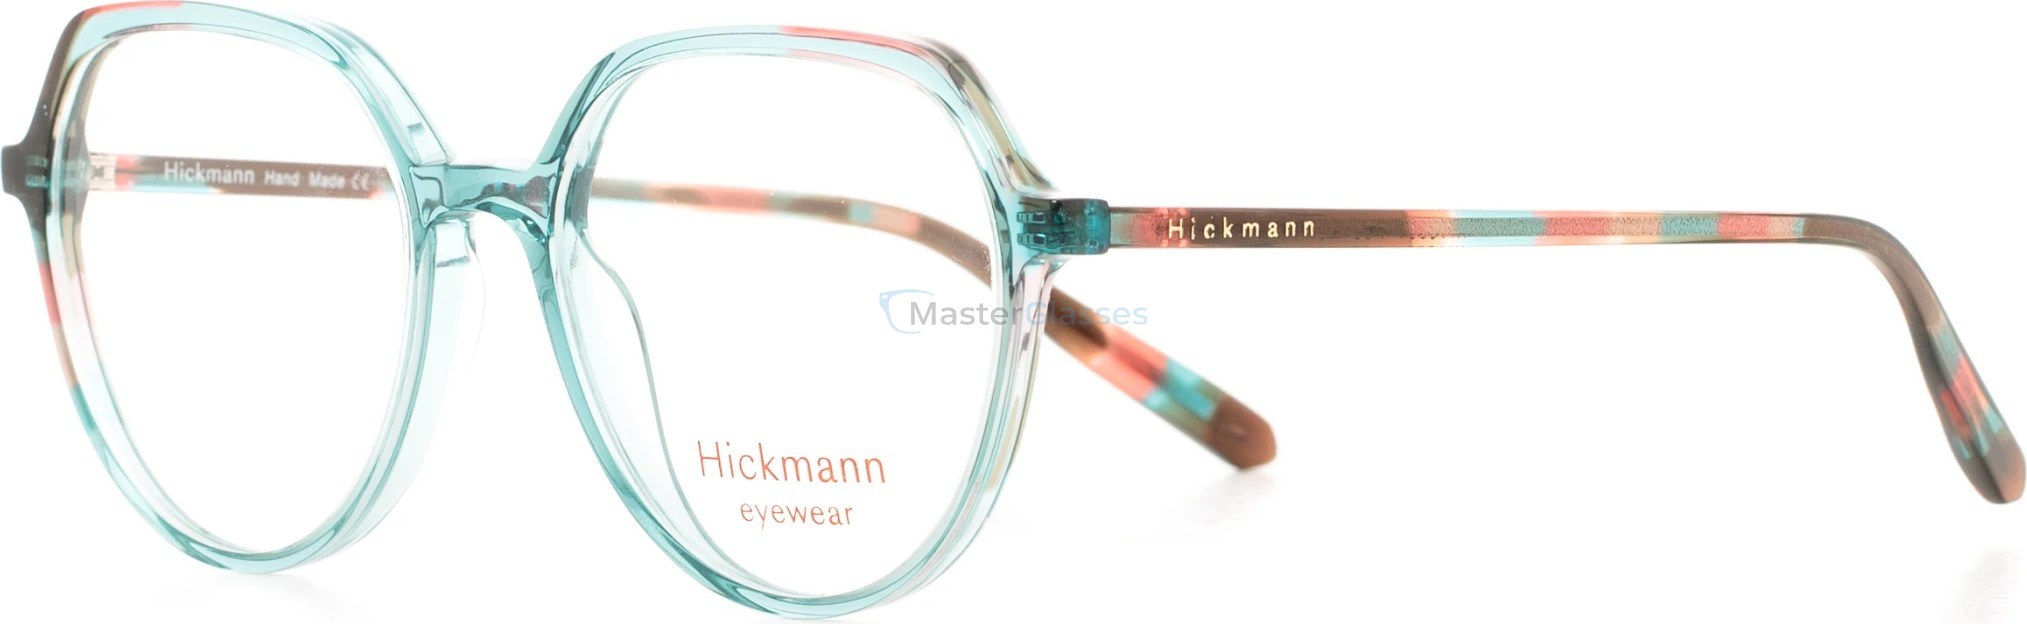  Hickmann HIY6001 P03